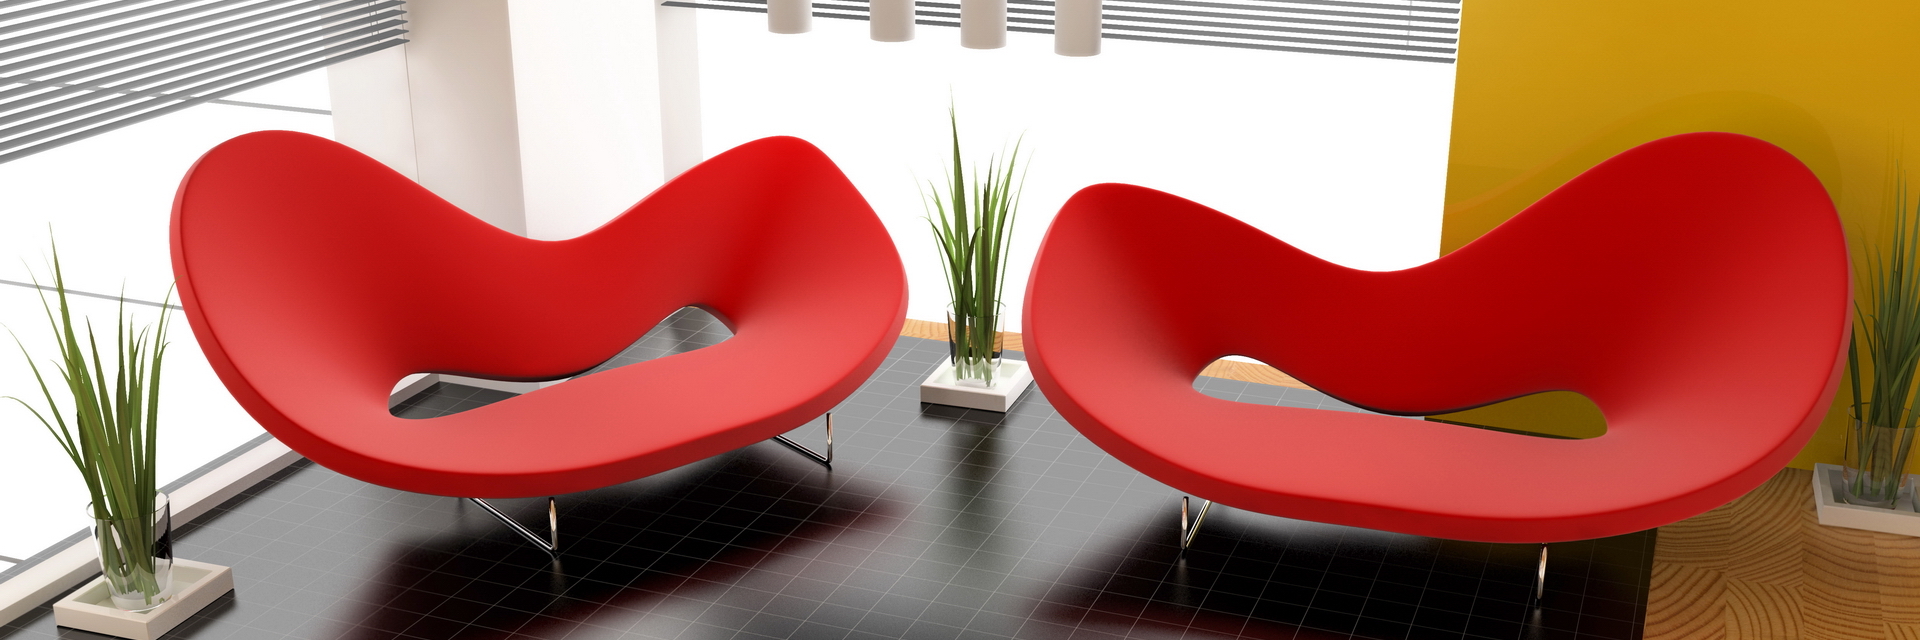 Алиэкспресс стулья. Интересные стулья. Цветная мебель из пластика необычной формы. Смелый дизайн дивана. Дизайнерские диваны для кошек.